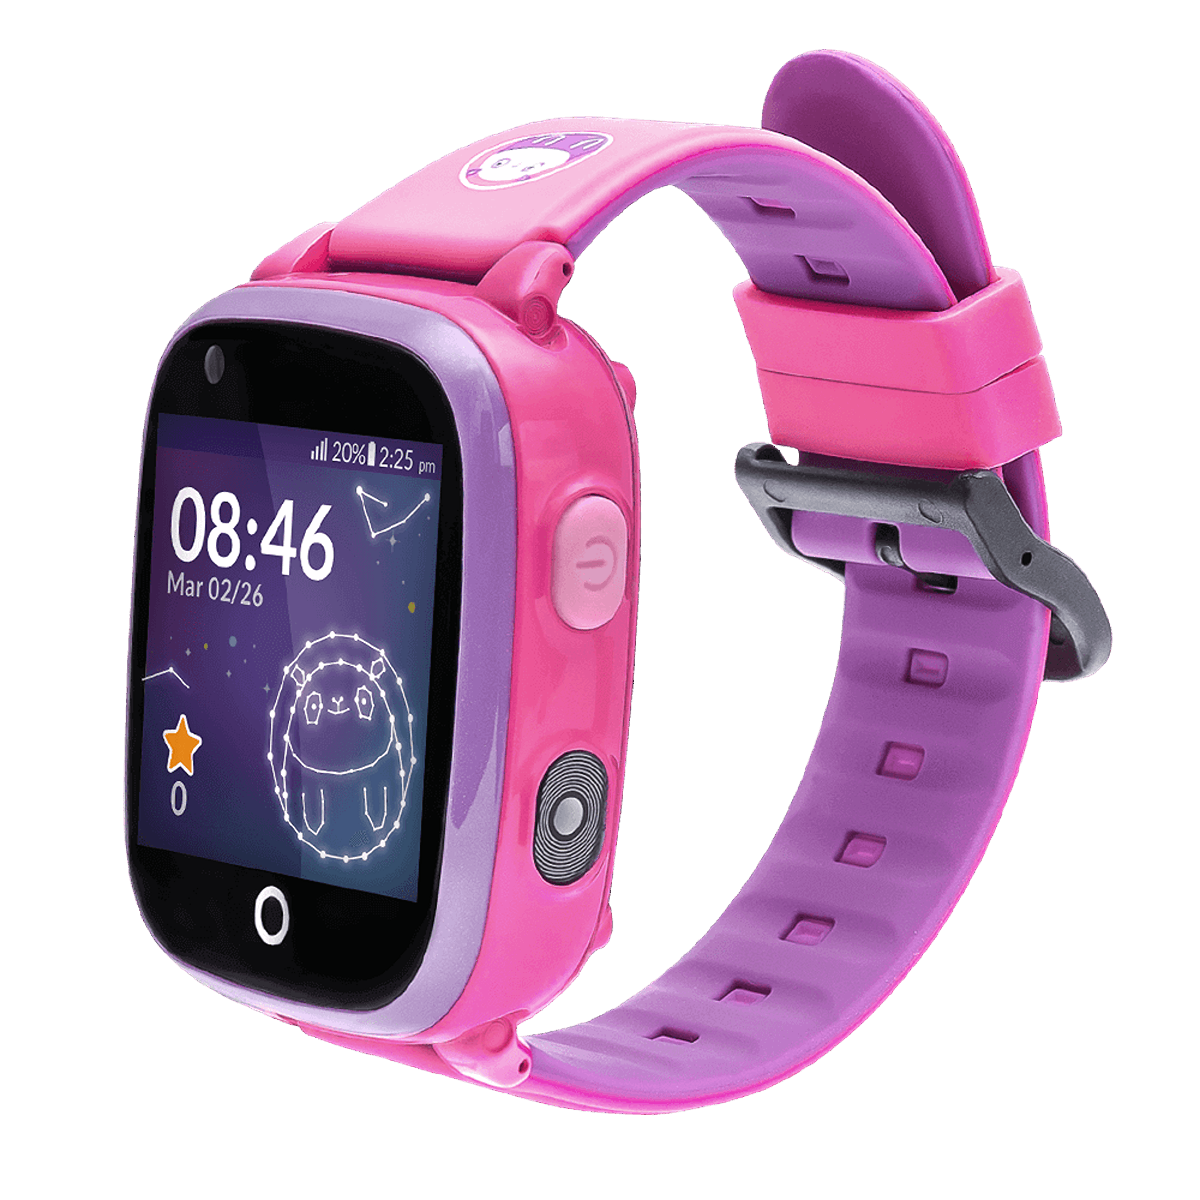 cm, Kinder 4G 10 Smartwatch SOYMOMO Kunststoff, Space Pink